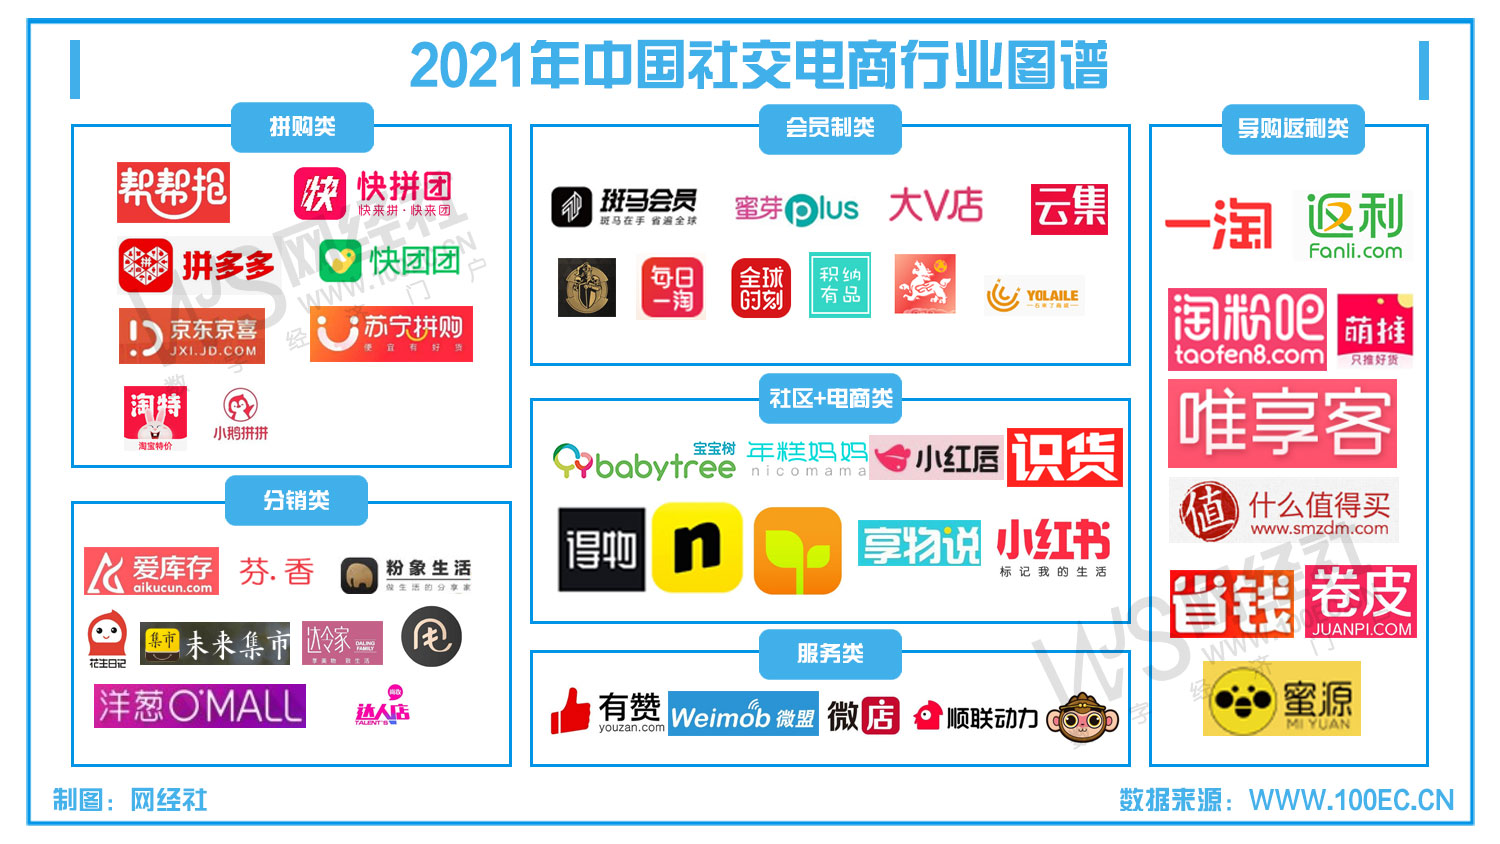 中国社交电商行业图谱(1).jpg